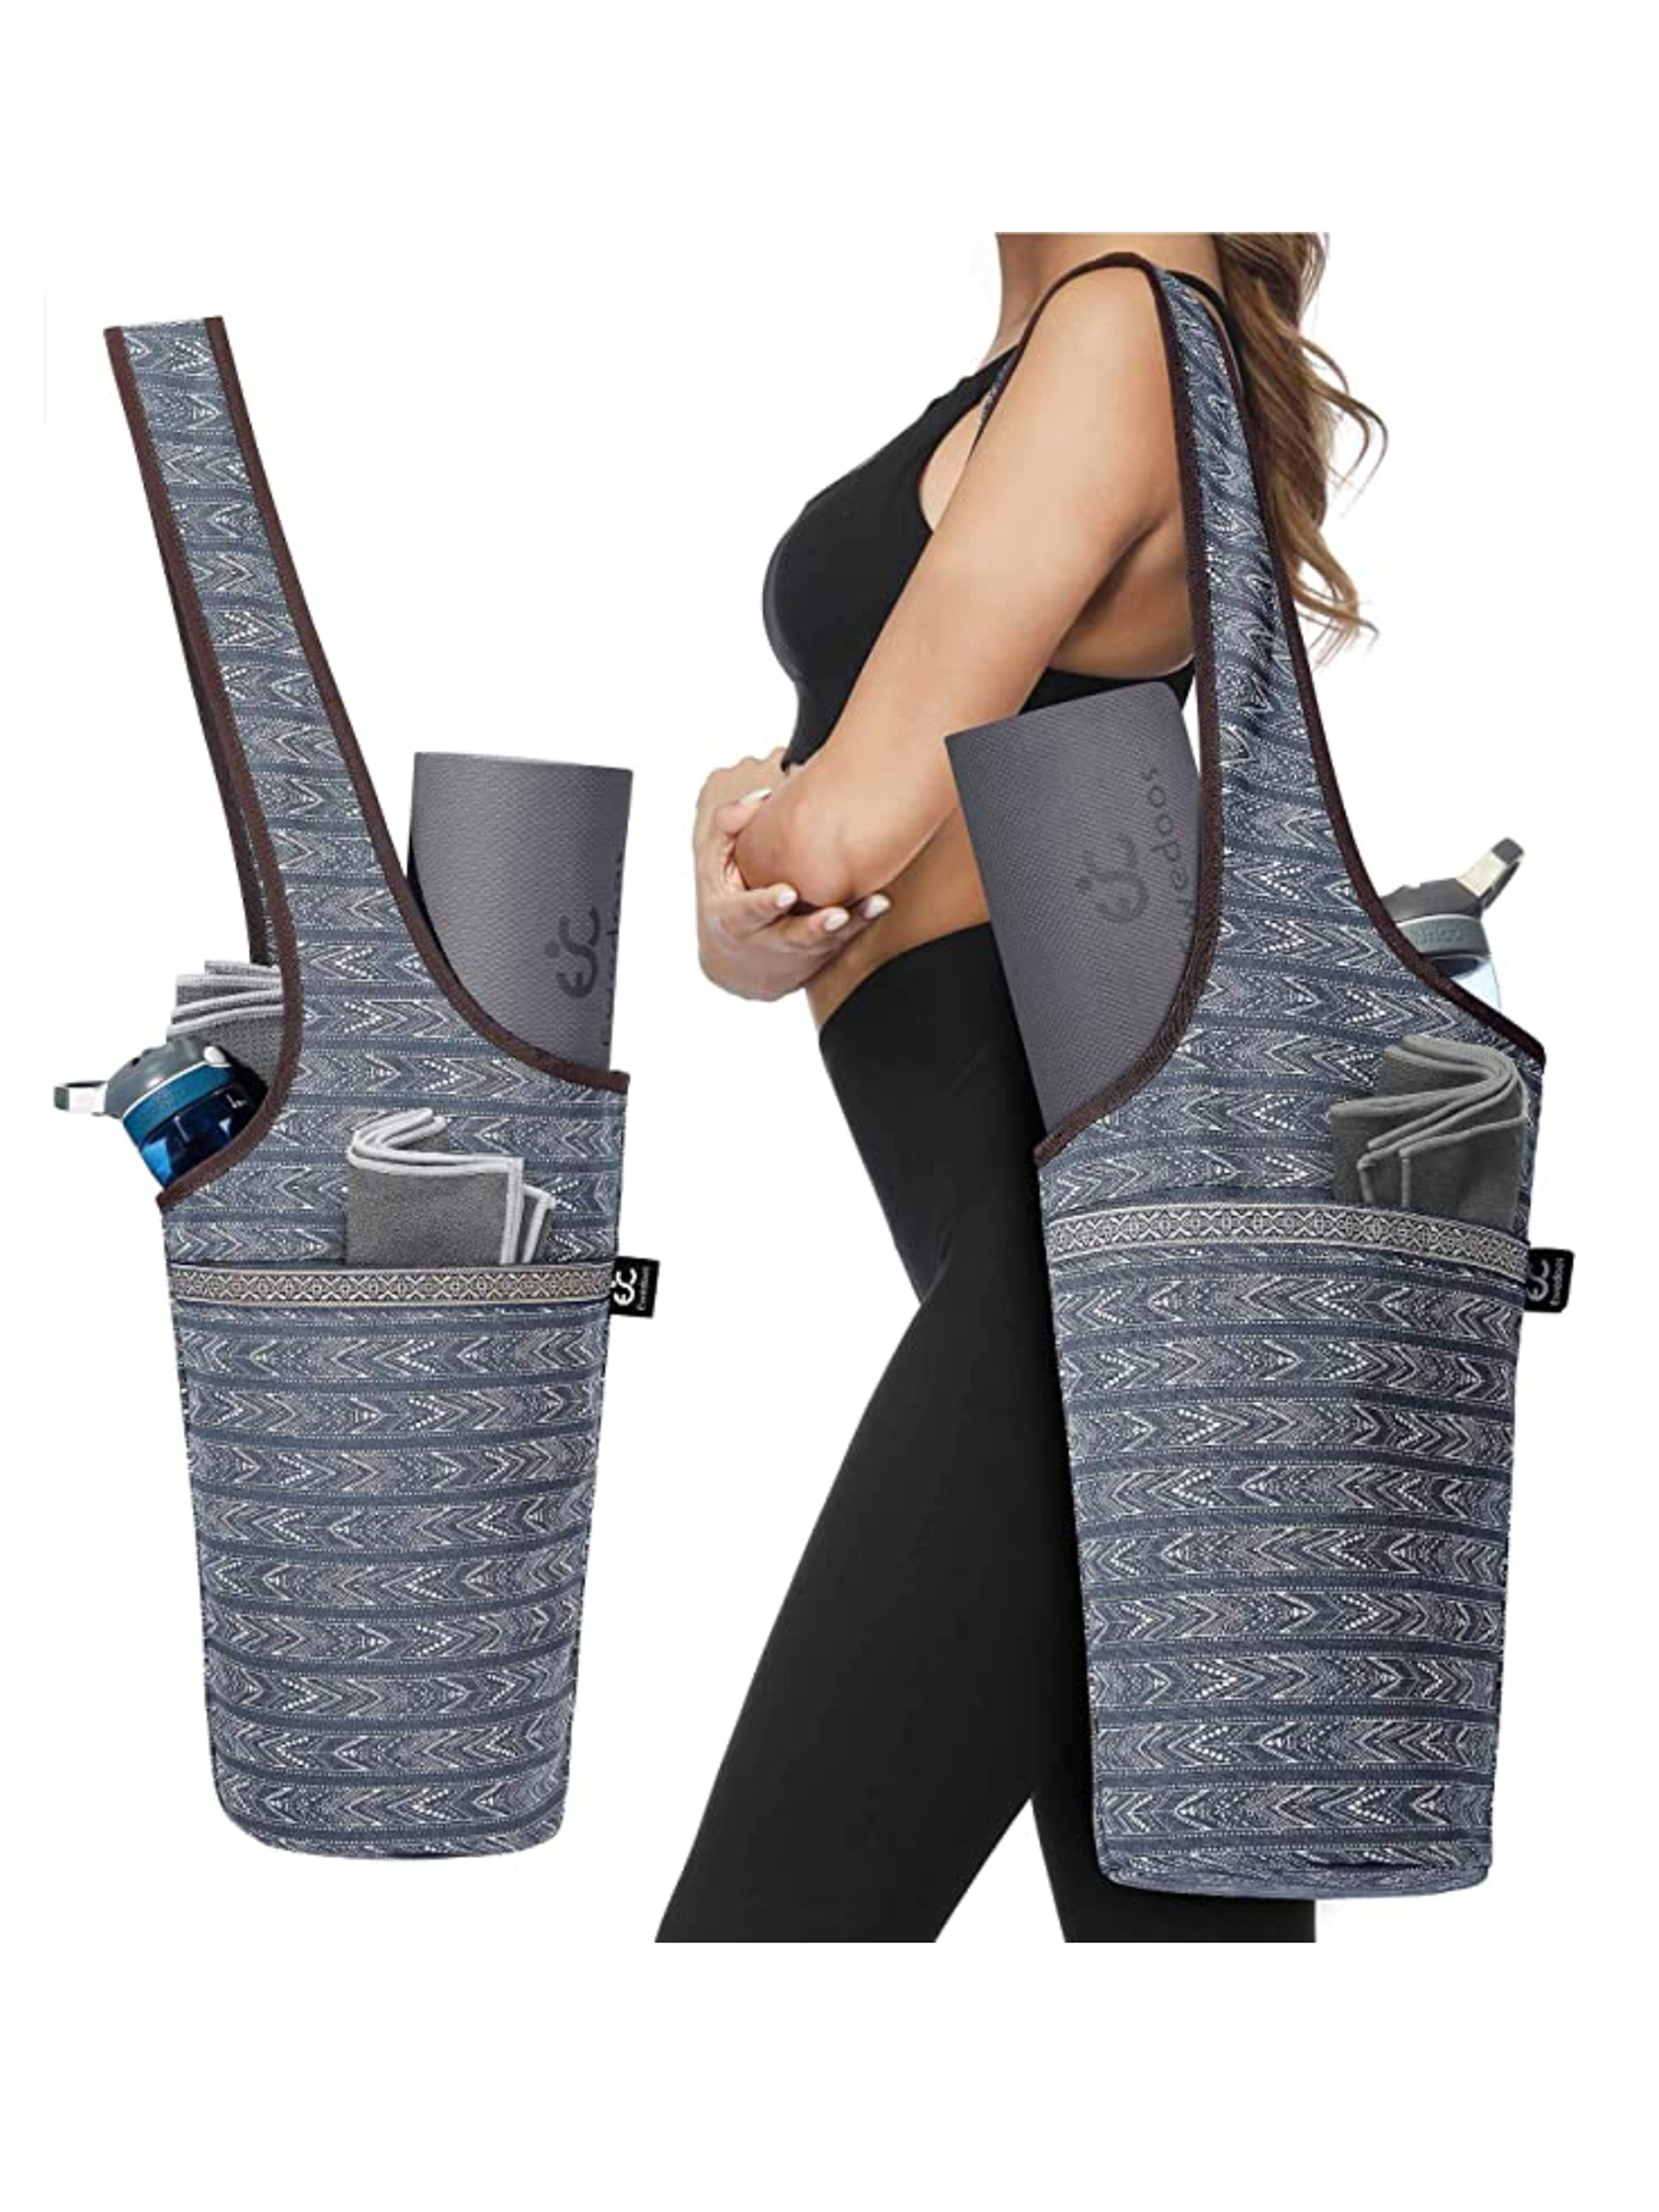 Yoga mat Bag TEHOSM Large Yoga Bag Carry bag Mat holder with Large Size Pocket and Zipper Pocket-Fit Most Size Mats 